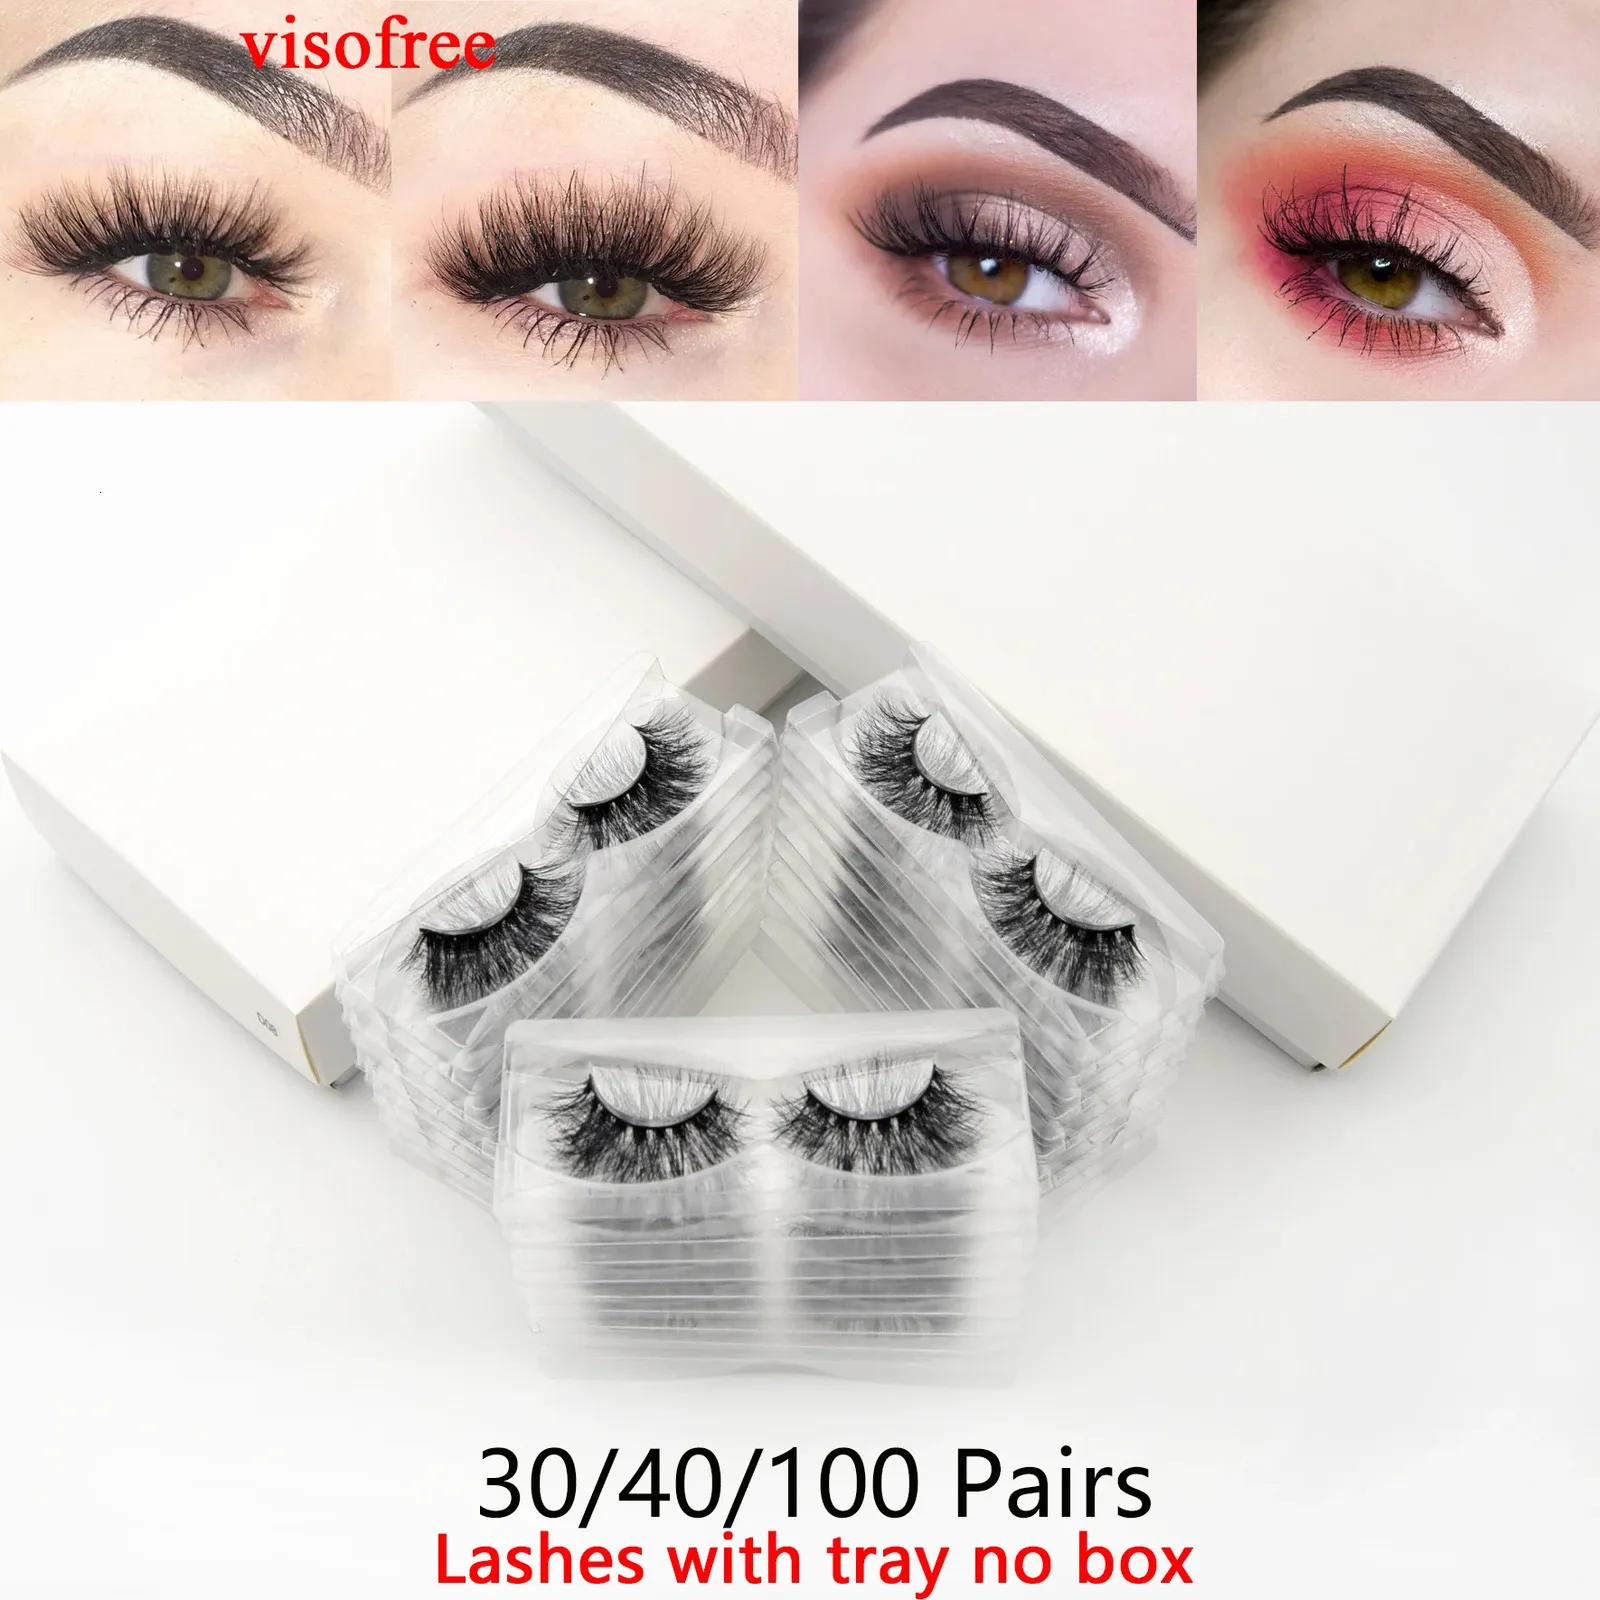 Visofree 30/40/100 Pairs 3D Mink Lashes With Tray No Box Handmade Full Strip Lashes Mink False Eyelashes Makeup eyelashes cilios 240113